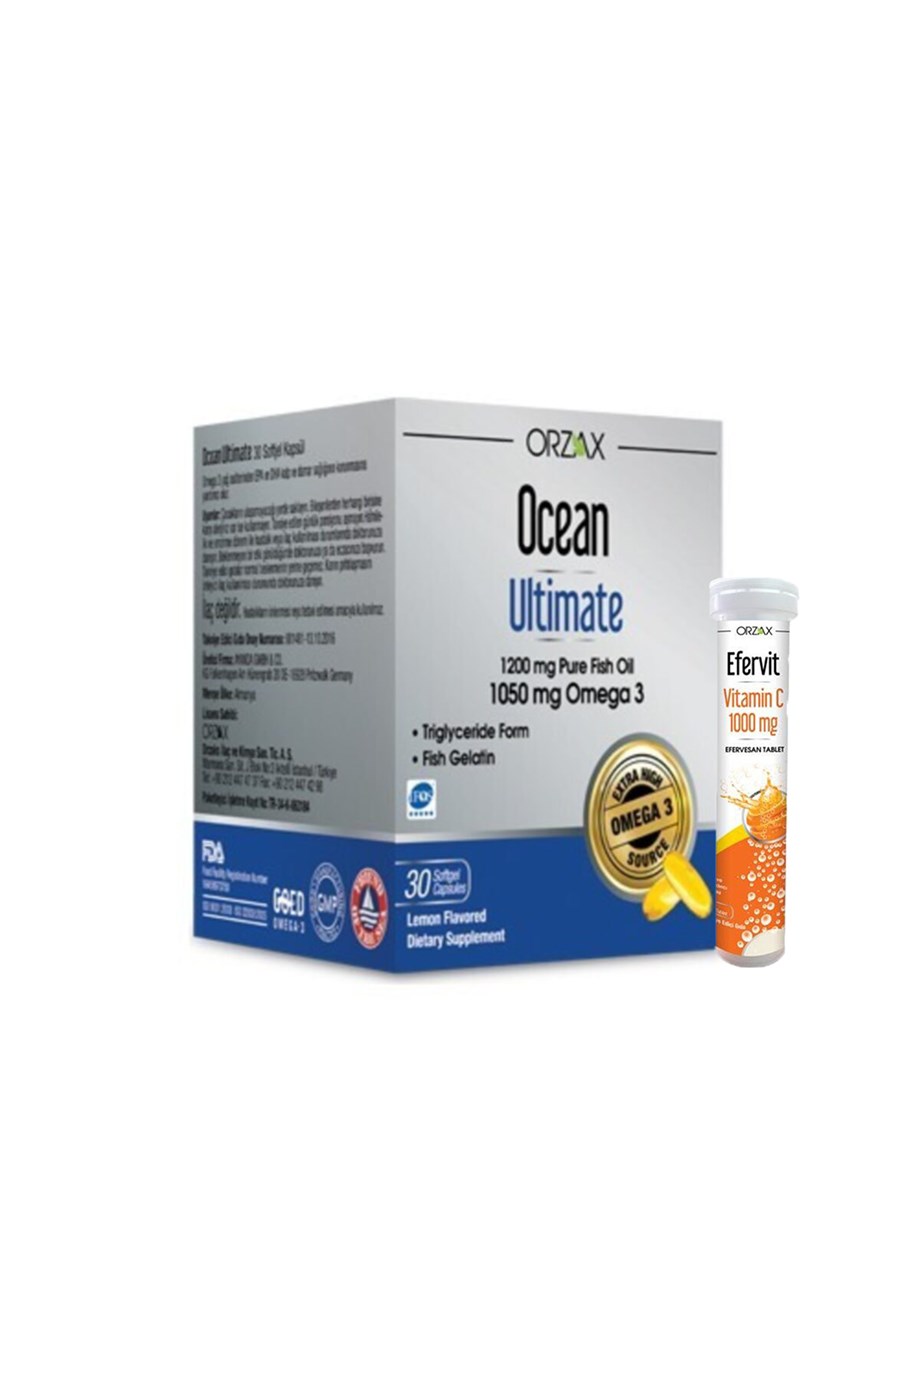 Orzax Ocean Ultimate 1200 mg Balık Yağı + Efervit Vitamin C 1000 mg  Hediyeli - 125,89 TL - Takviyegiller.com